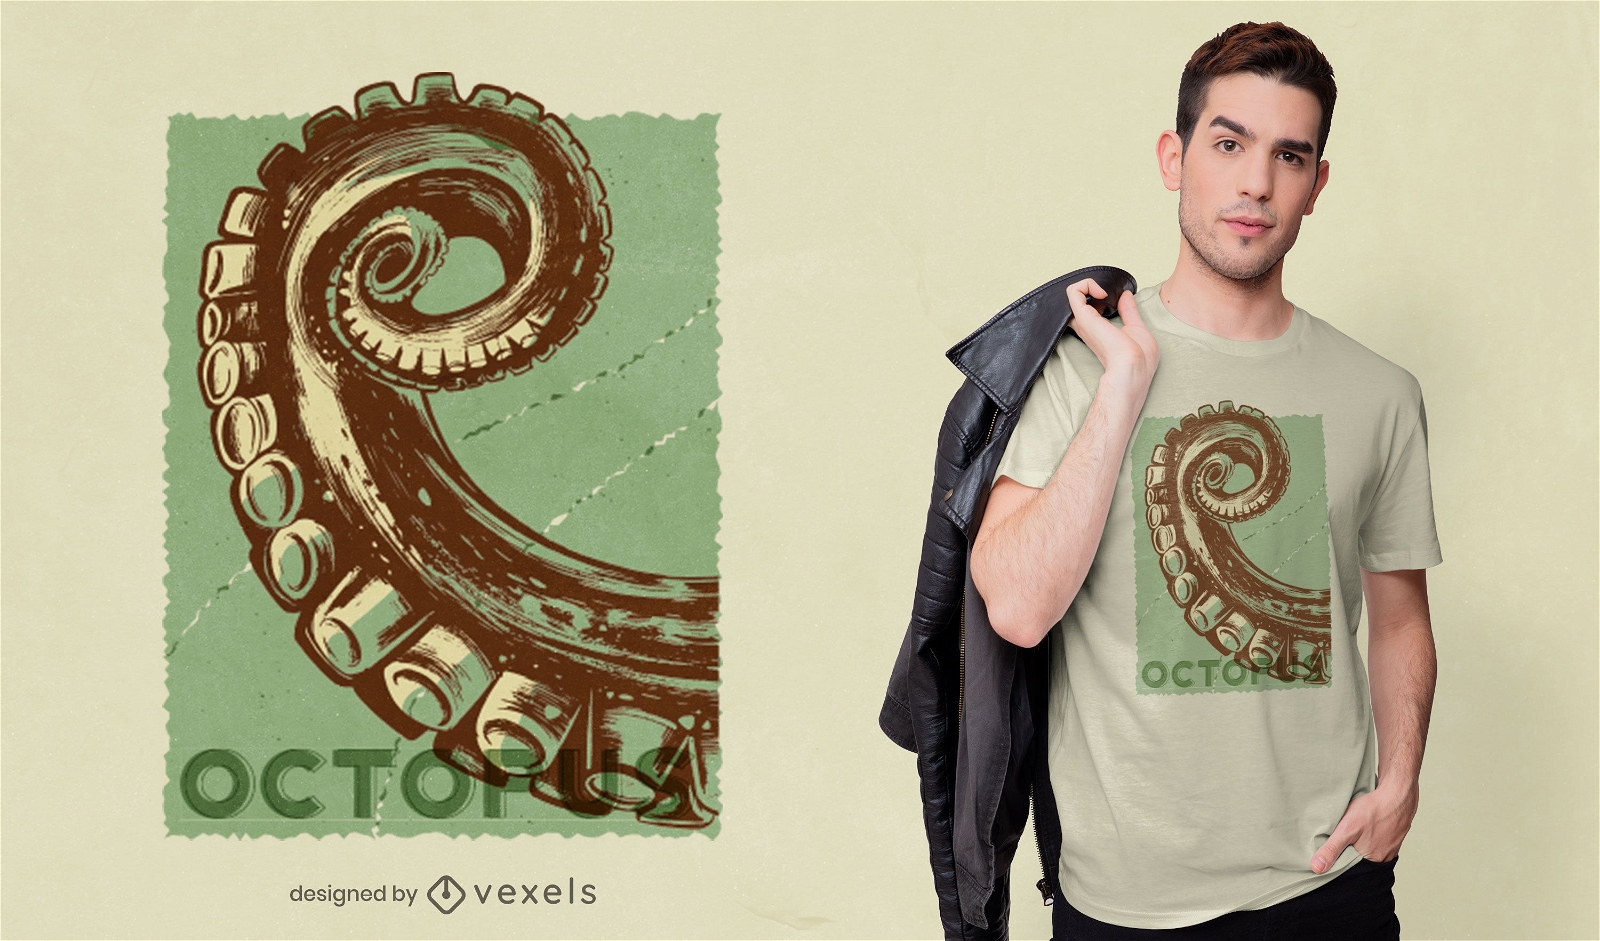 Design de t-shirt Octopus tent?culo